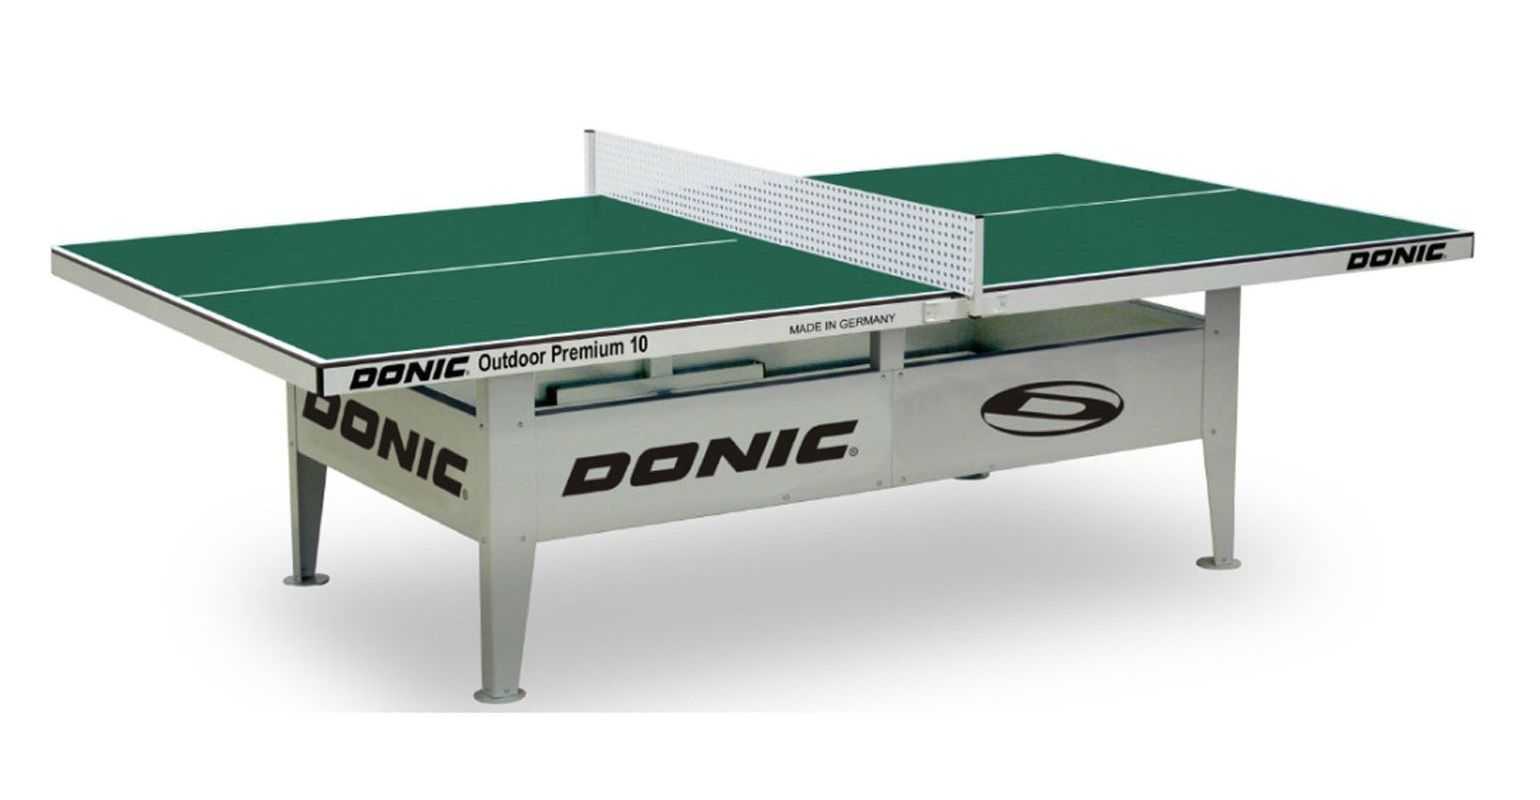  сделать теннисный стол: стандартные размеры, из чего собрать .